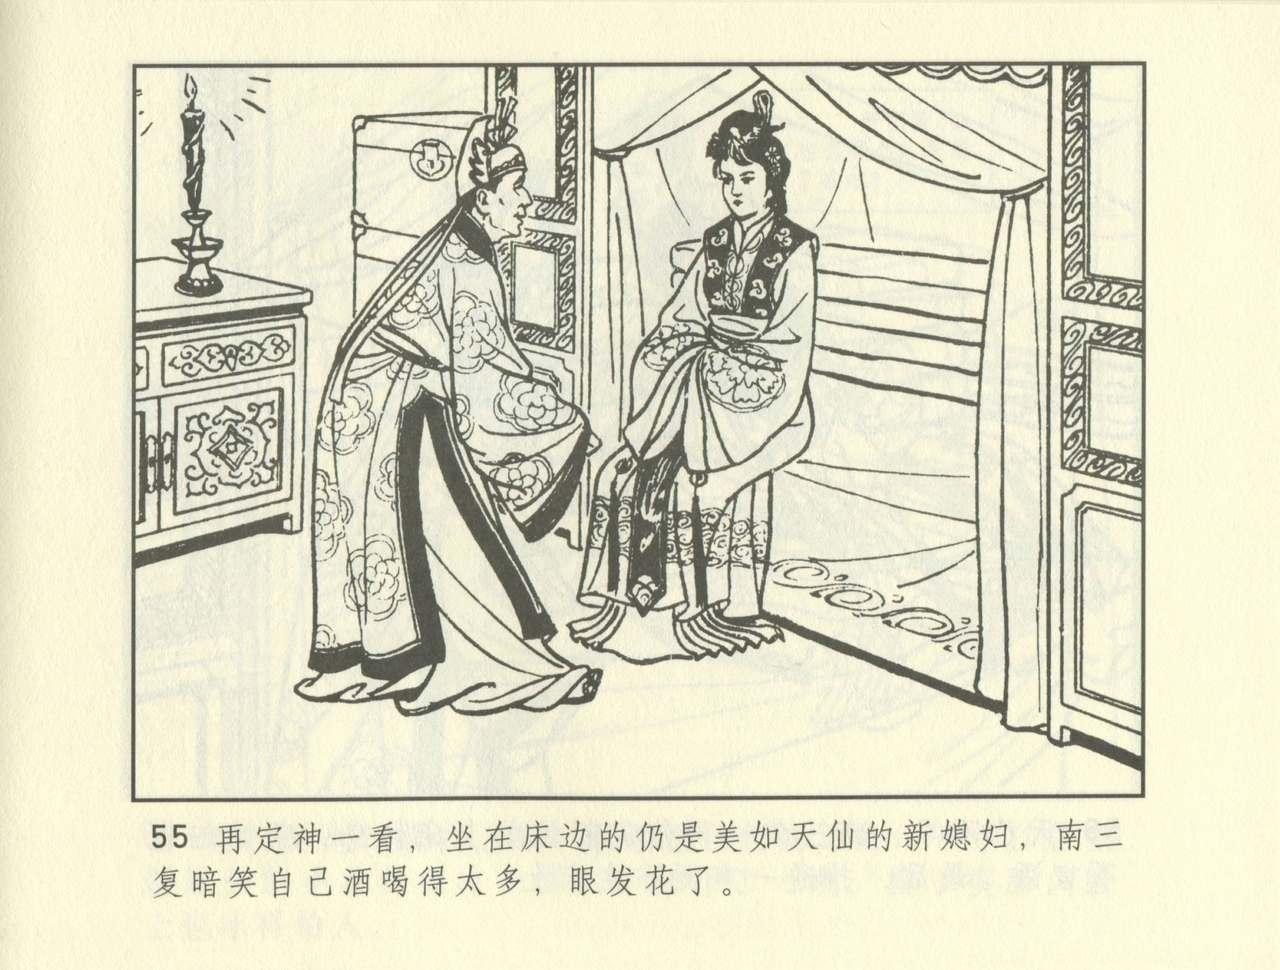 聊斋志异 张玮等绘 天津人民美术出版社 卷二十一 ~ 三十 264